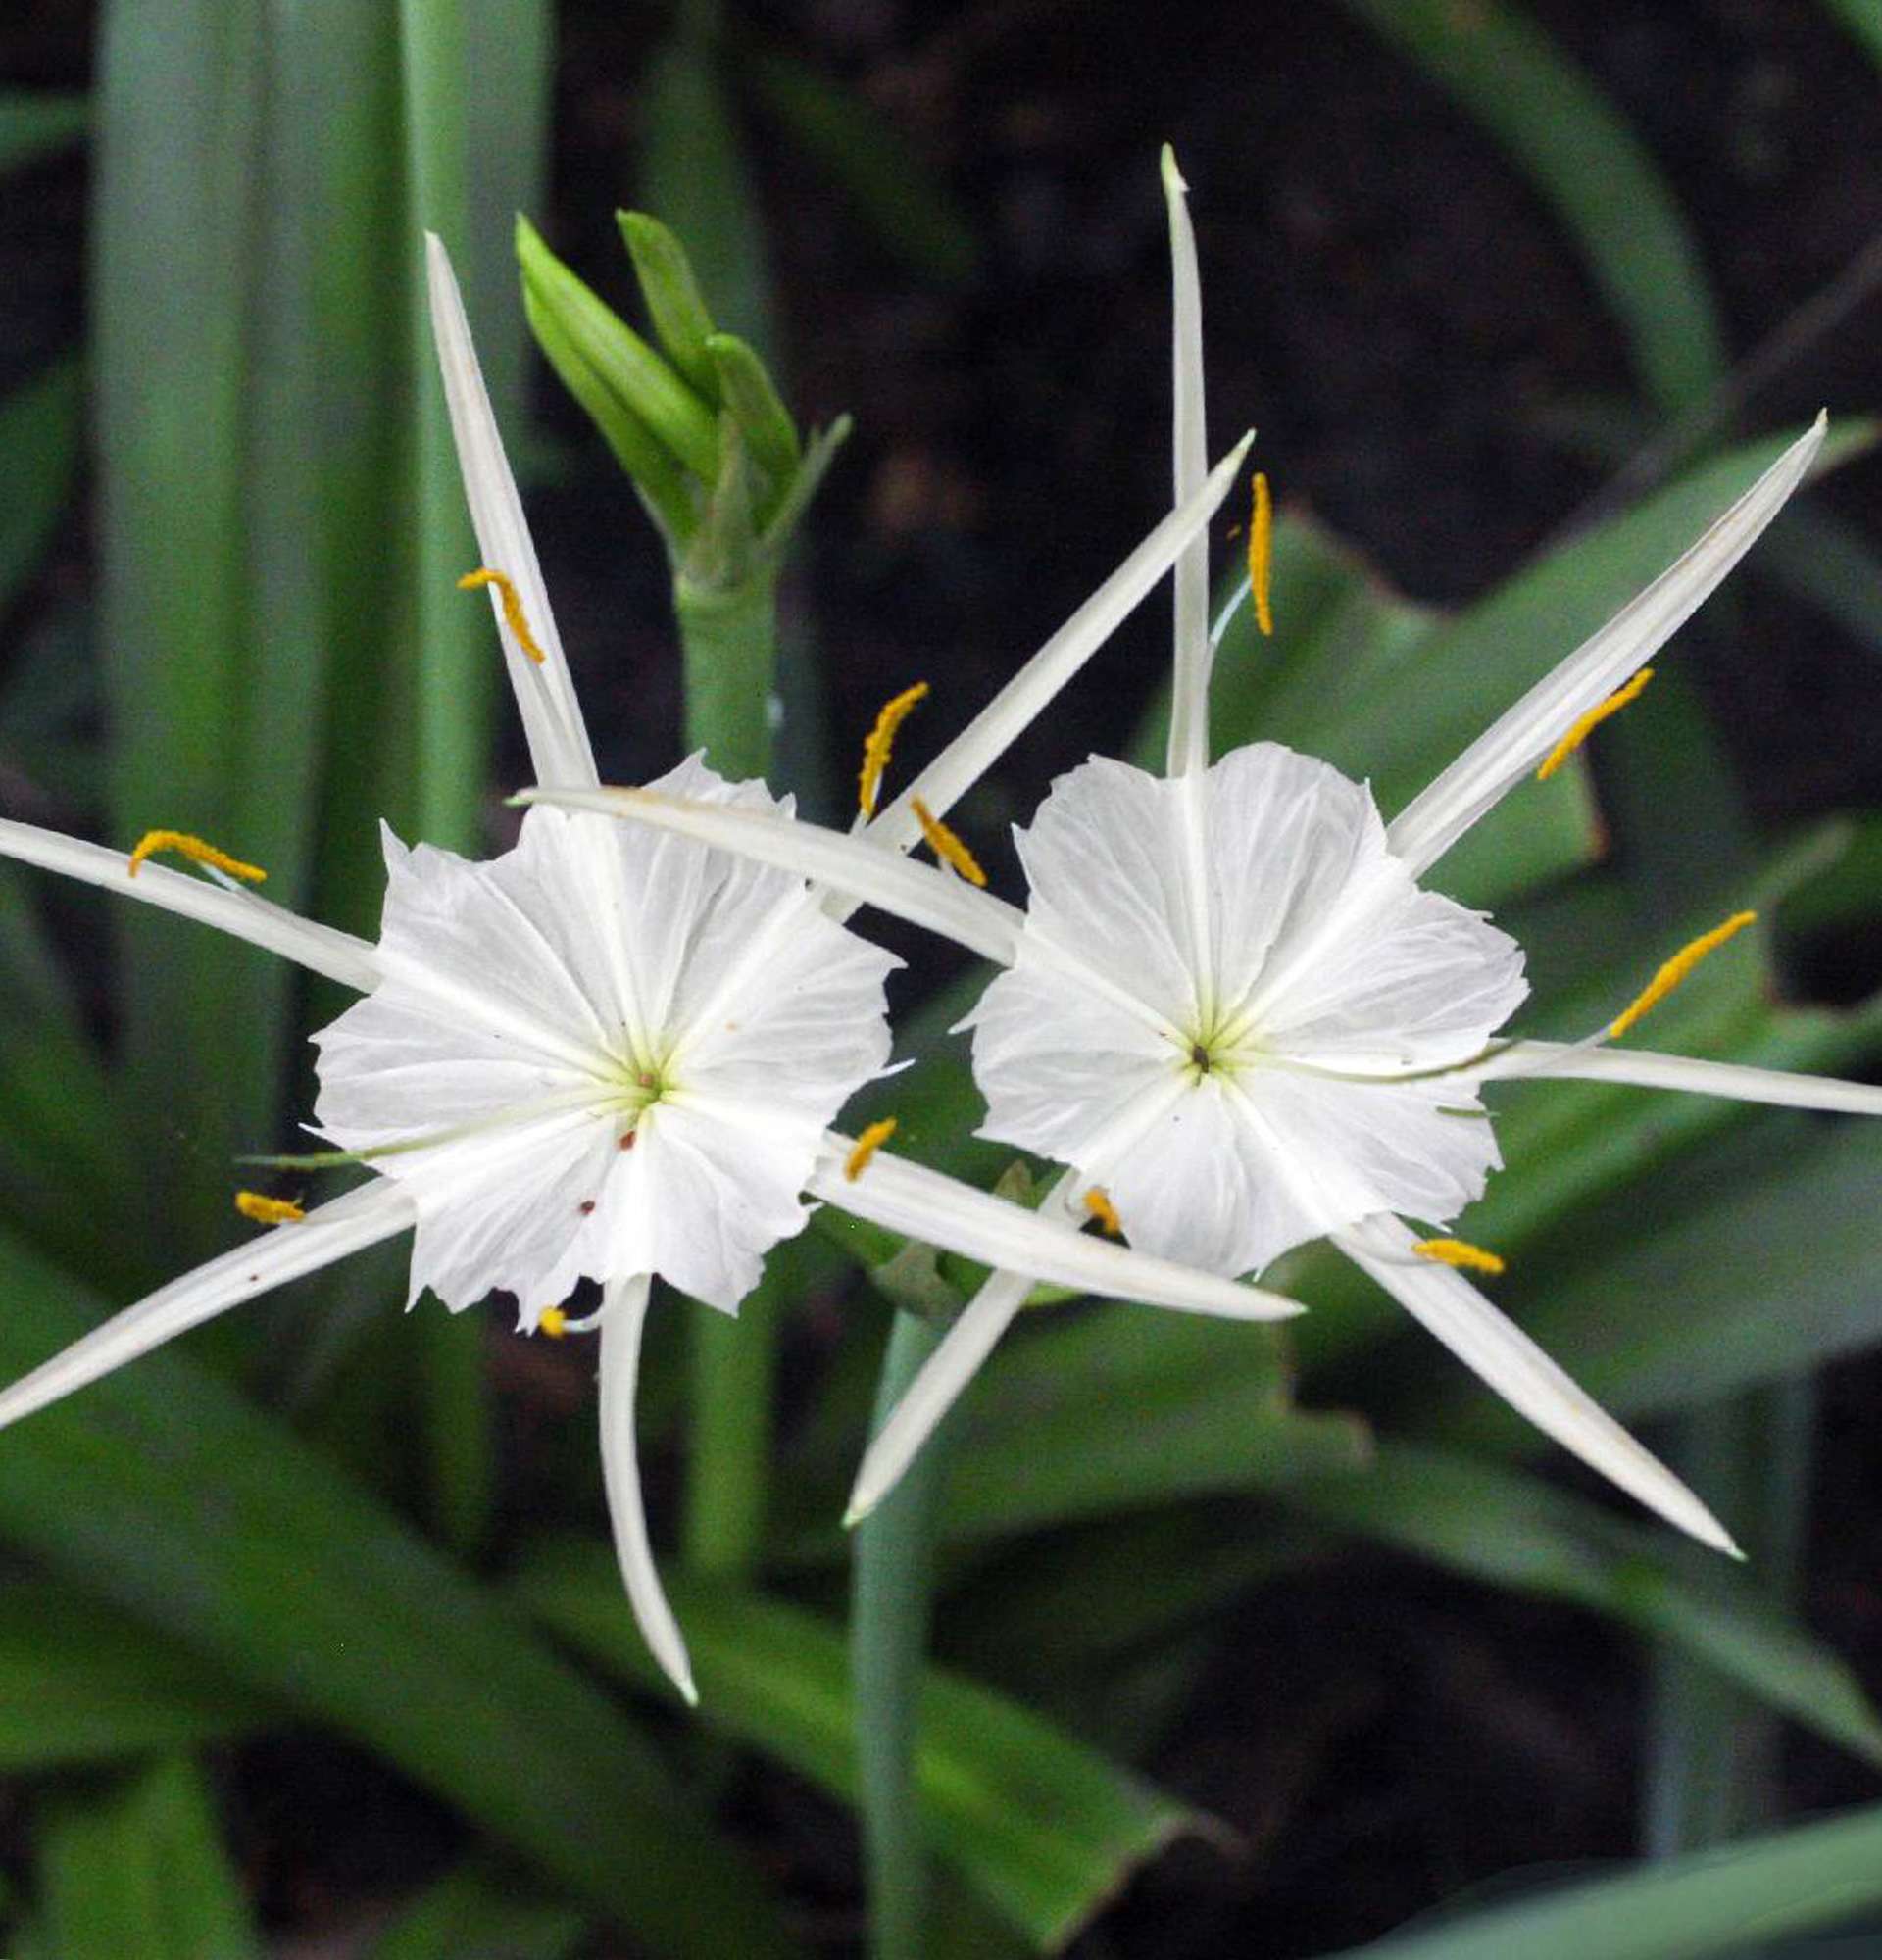  лилия паук фото - белый цветок Гименокаллис